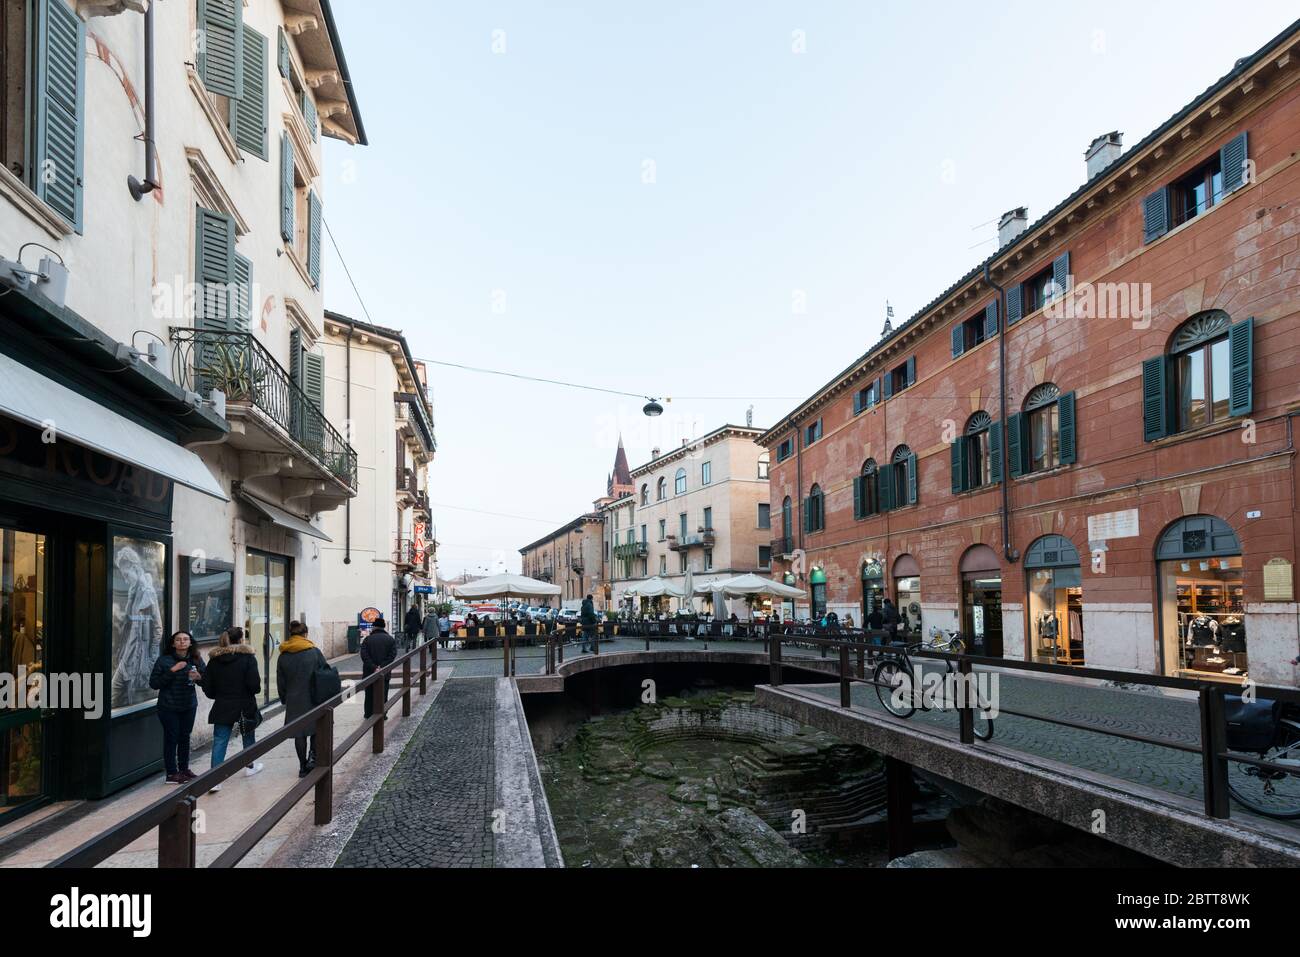 VERONA, ITALIA - 14, MARZO de 2018: Imagen horizontal del sitio arqueológico en las calles de Verona durante el día, Italia Foto de stock